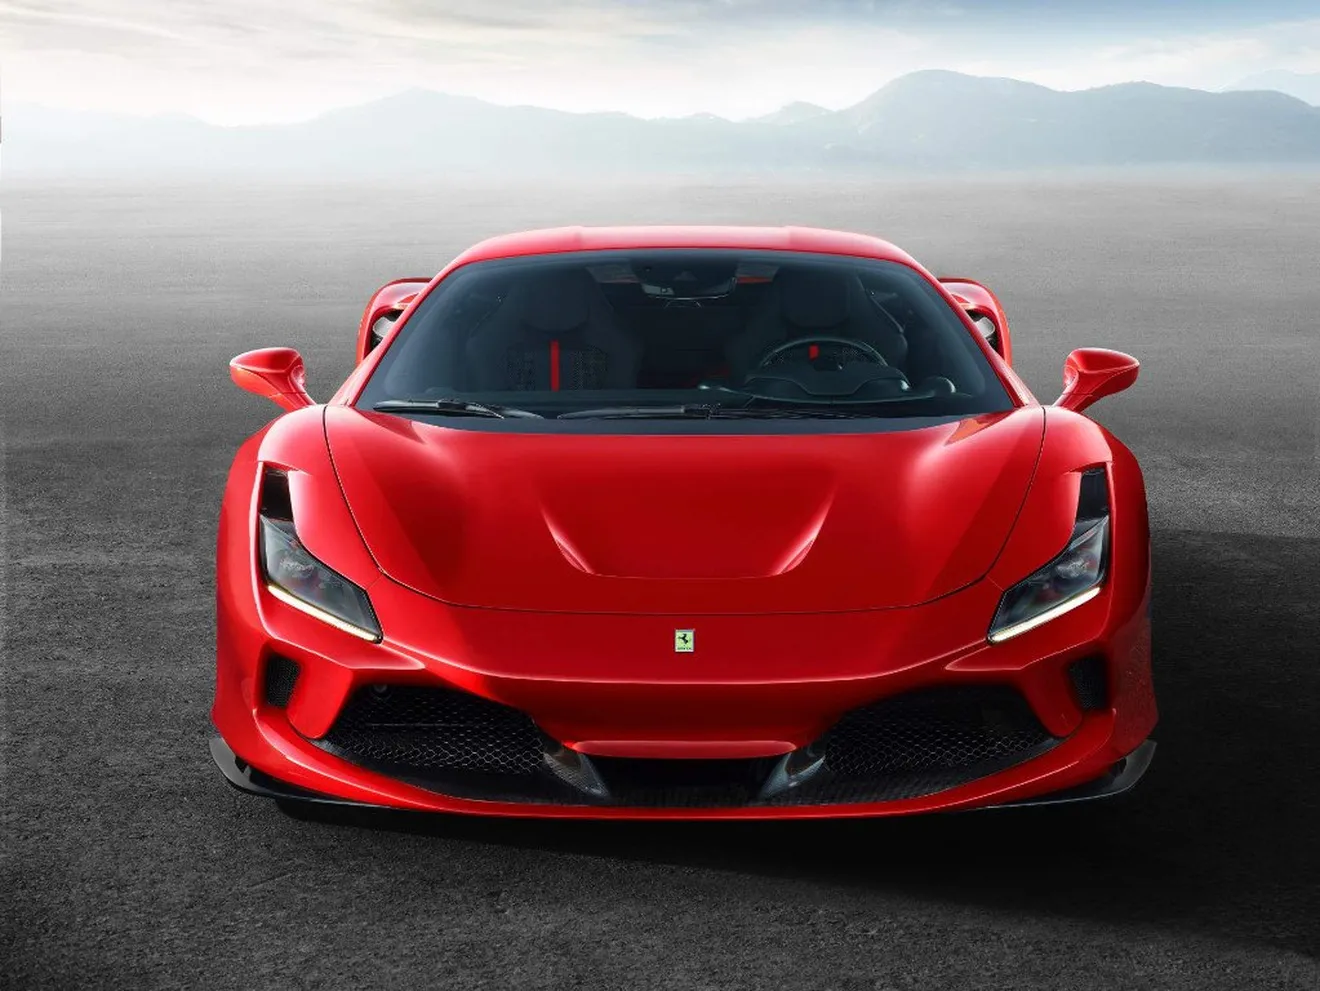 Tras el Ferrari F8 Tributo llegarán otras 4 novedades Ferrari este 2019